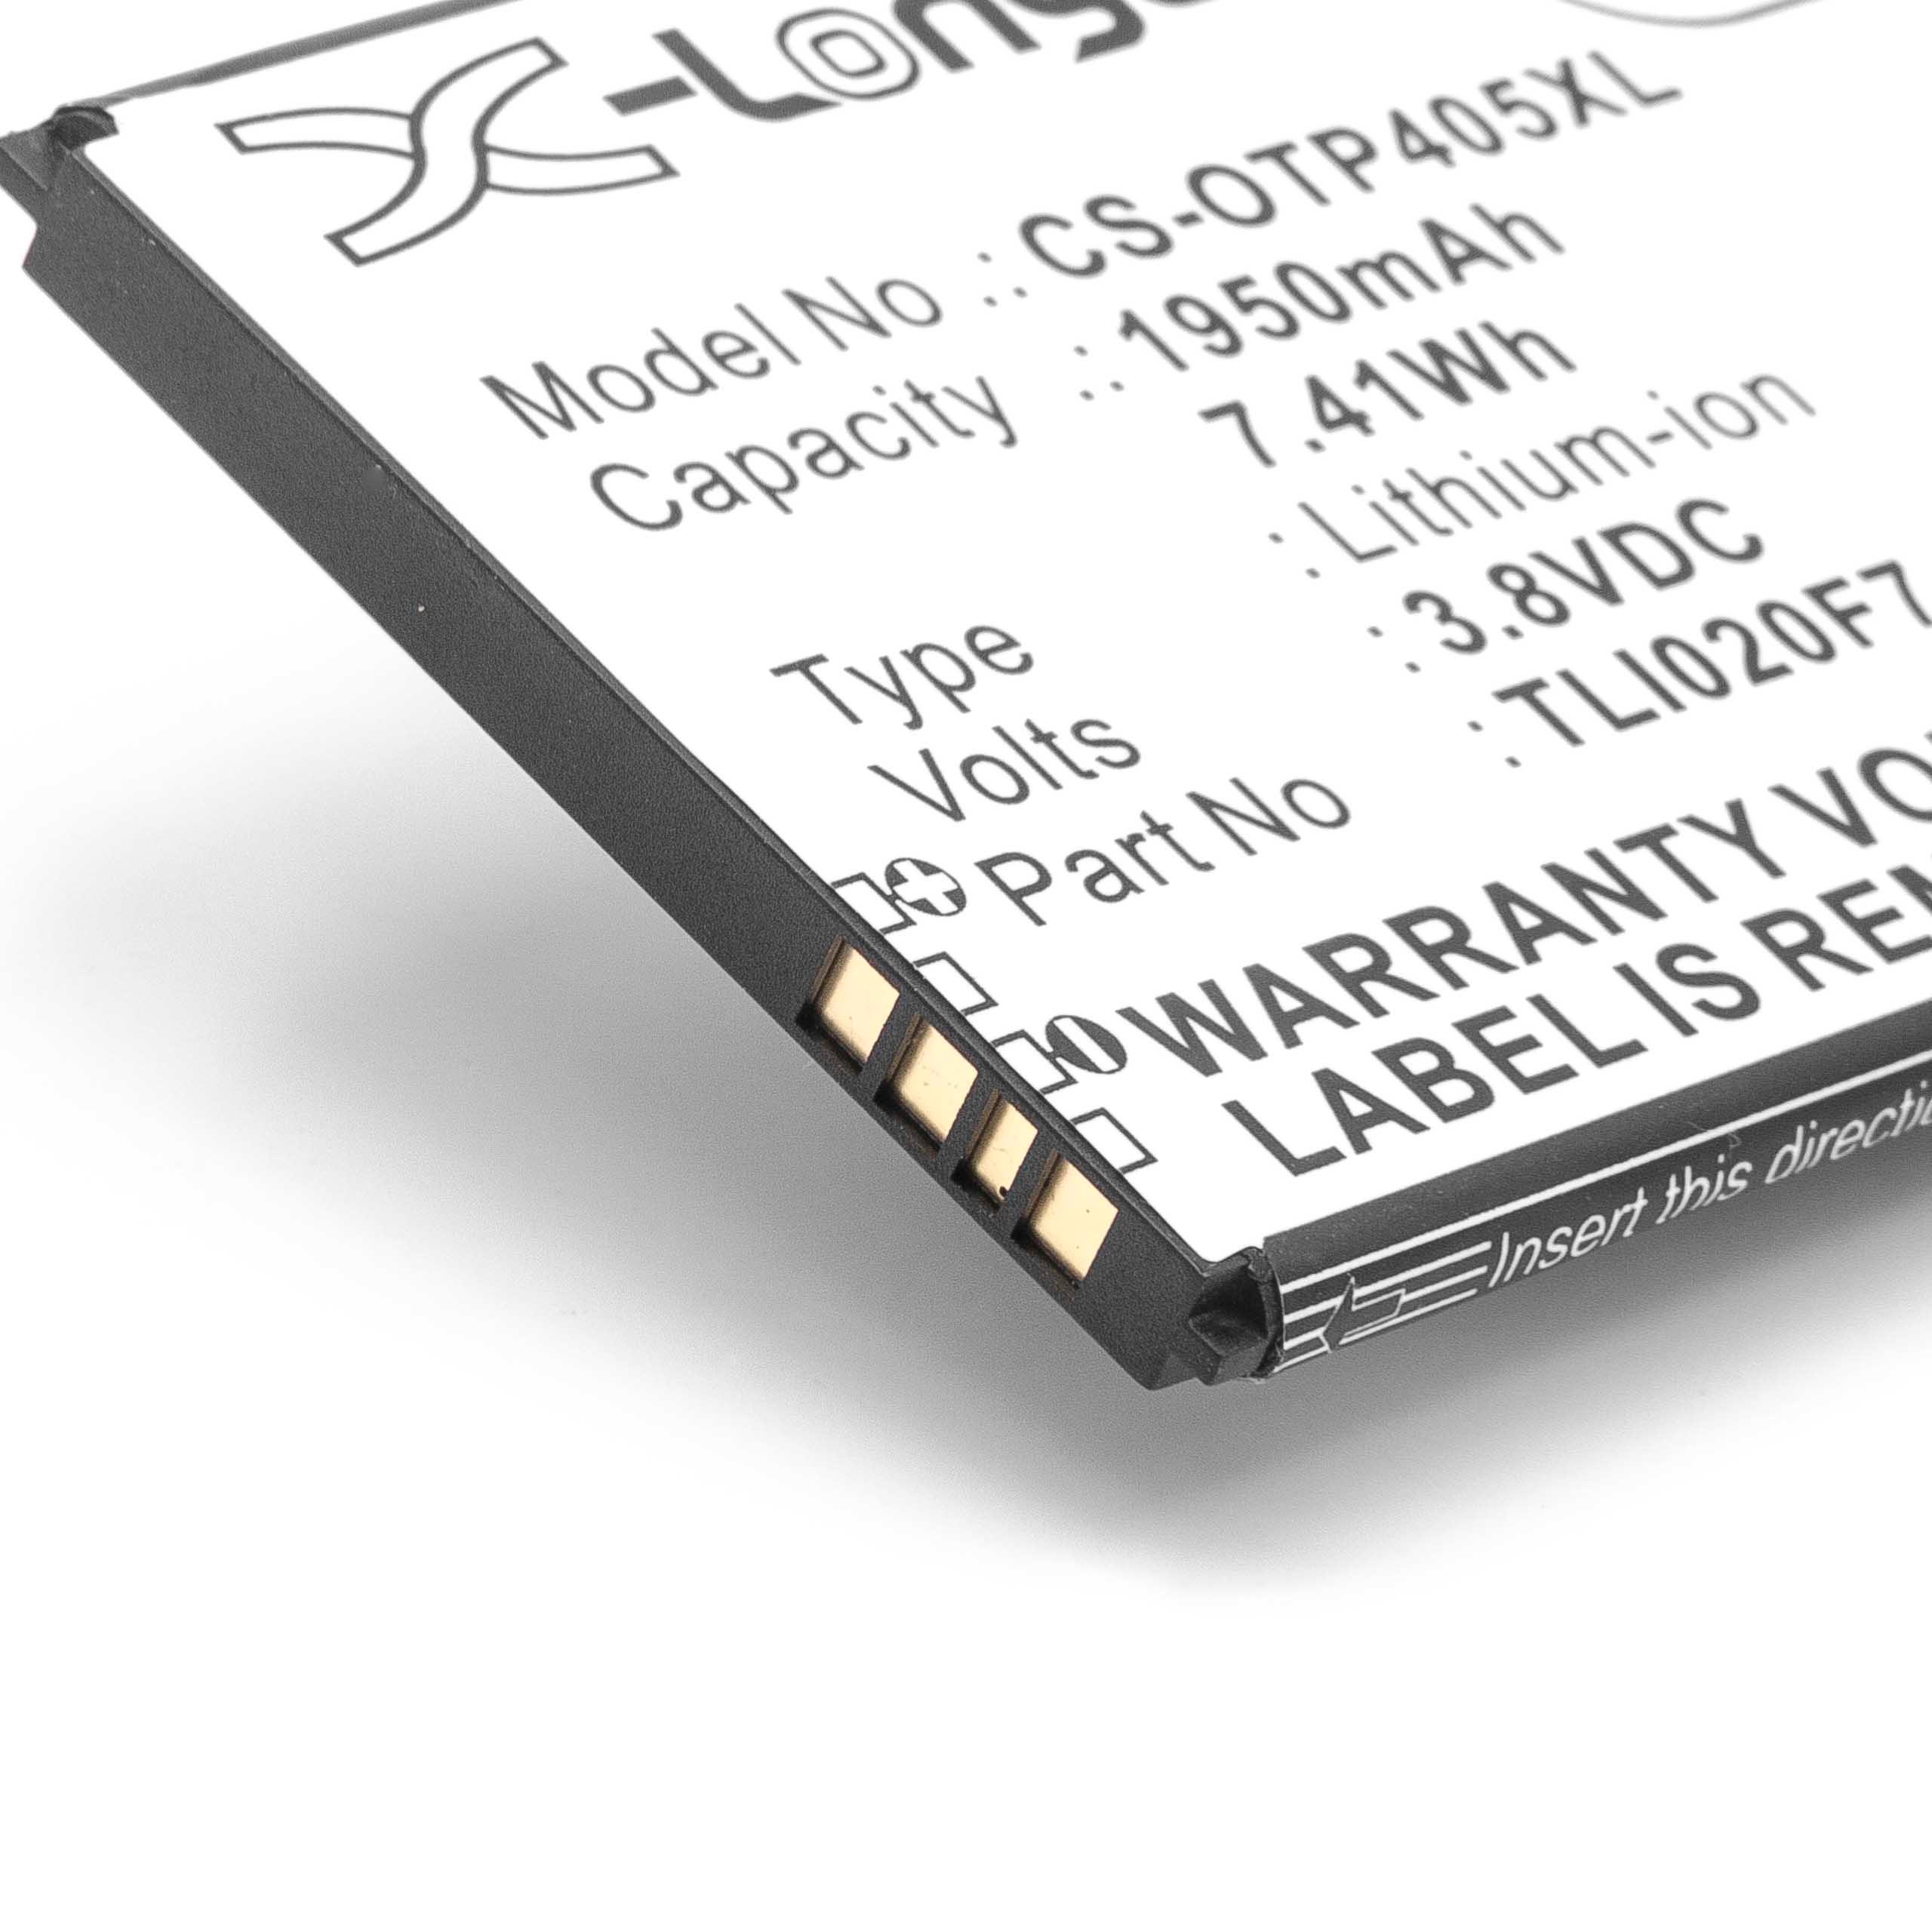 Batterie remplace Alcatel TLI020F7 pour téléphone portable - 1950mAh, 3,8V, Li-ion